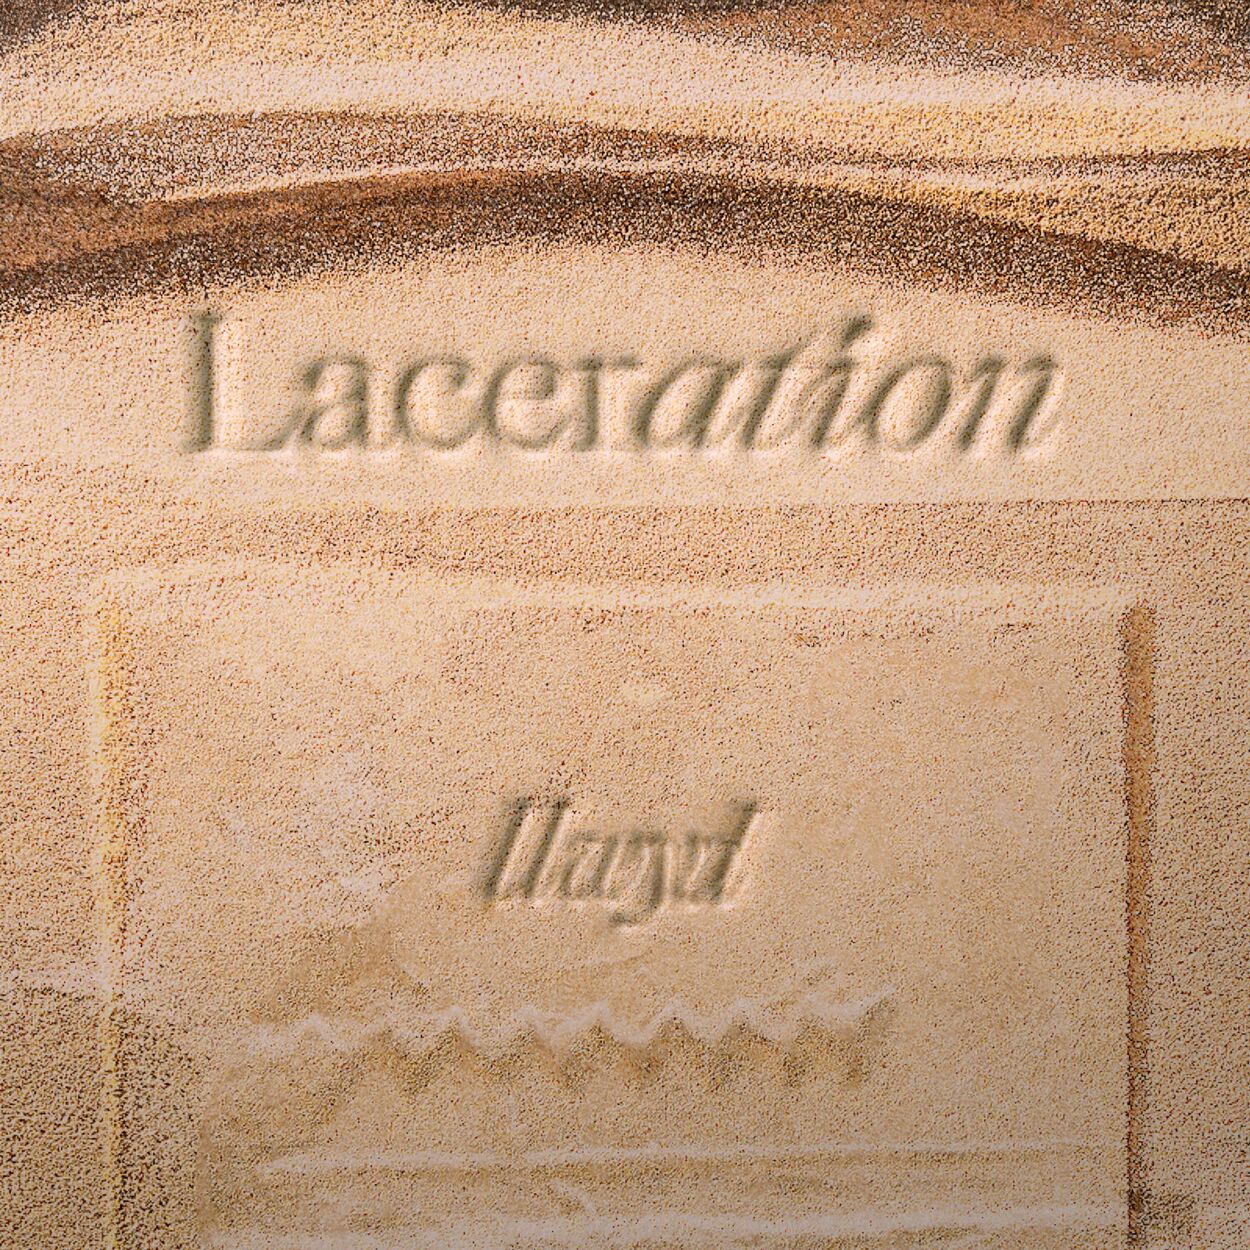 Llwyd – Laceration – EP